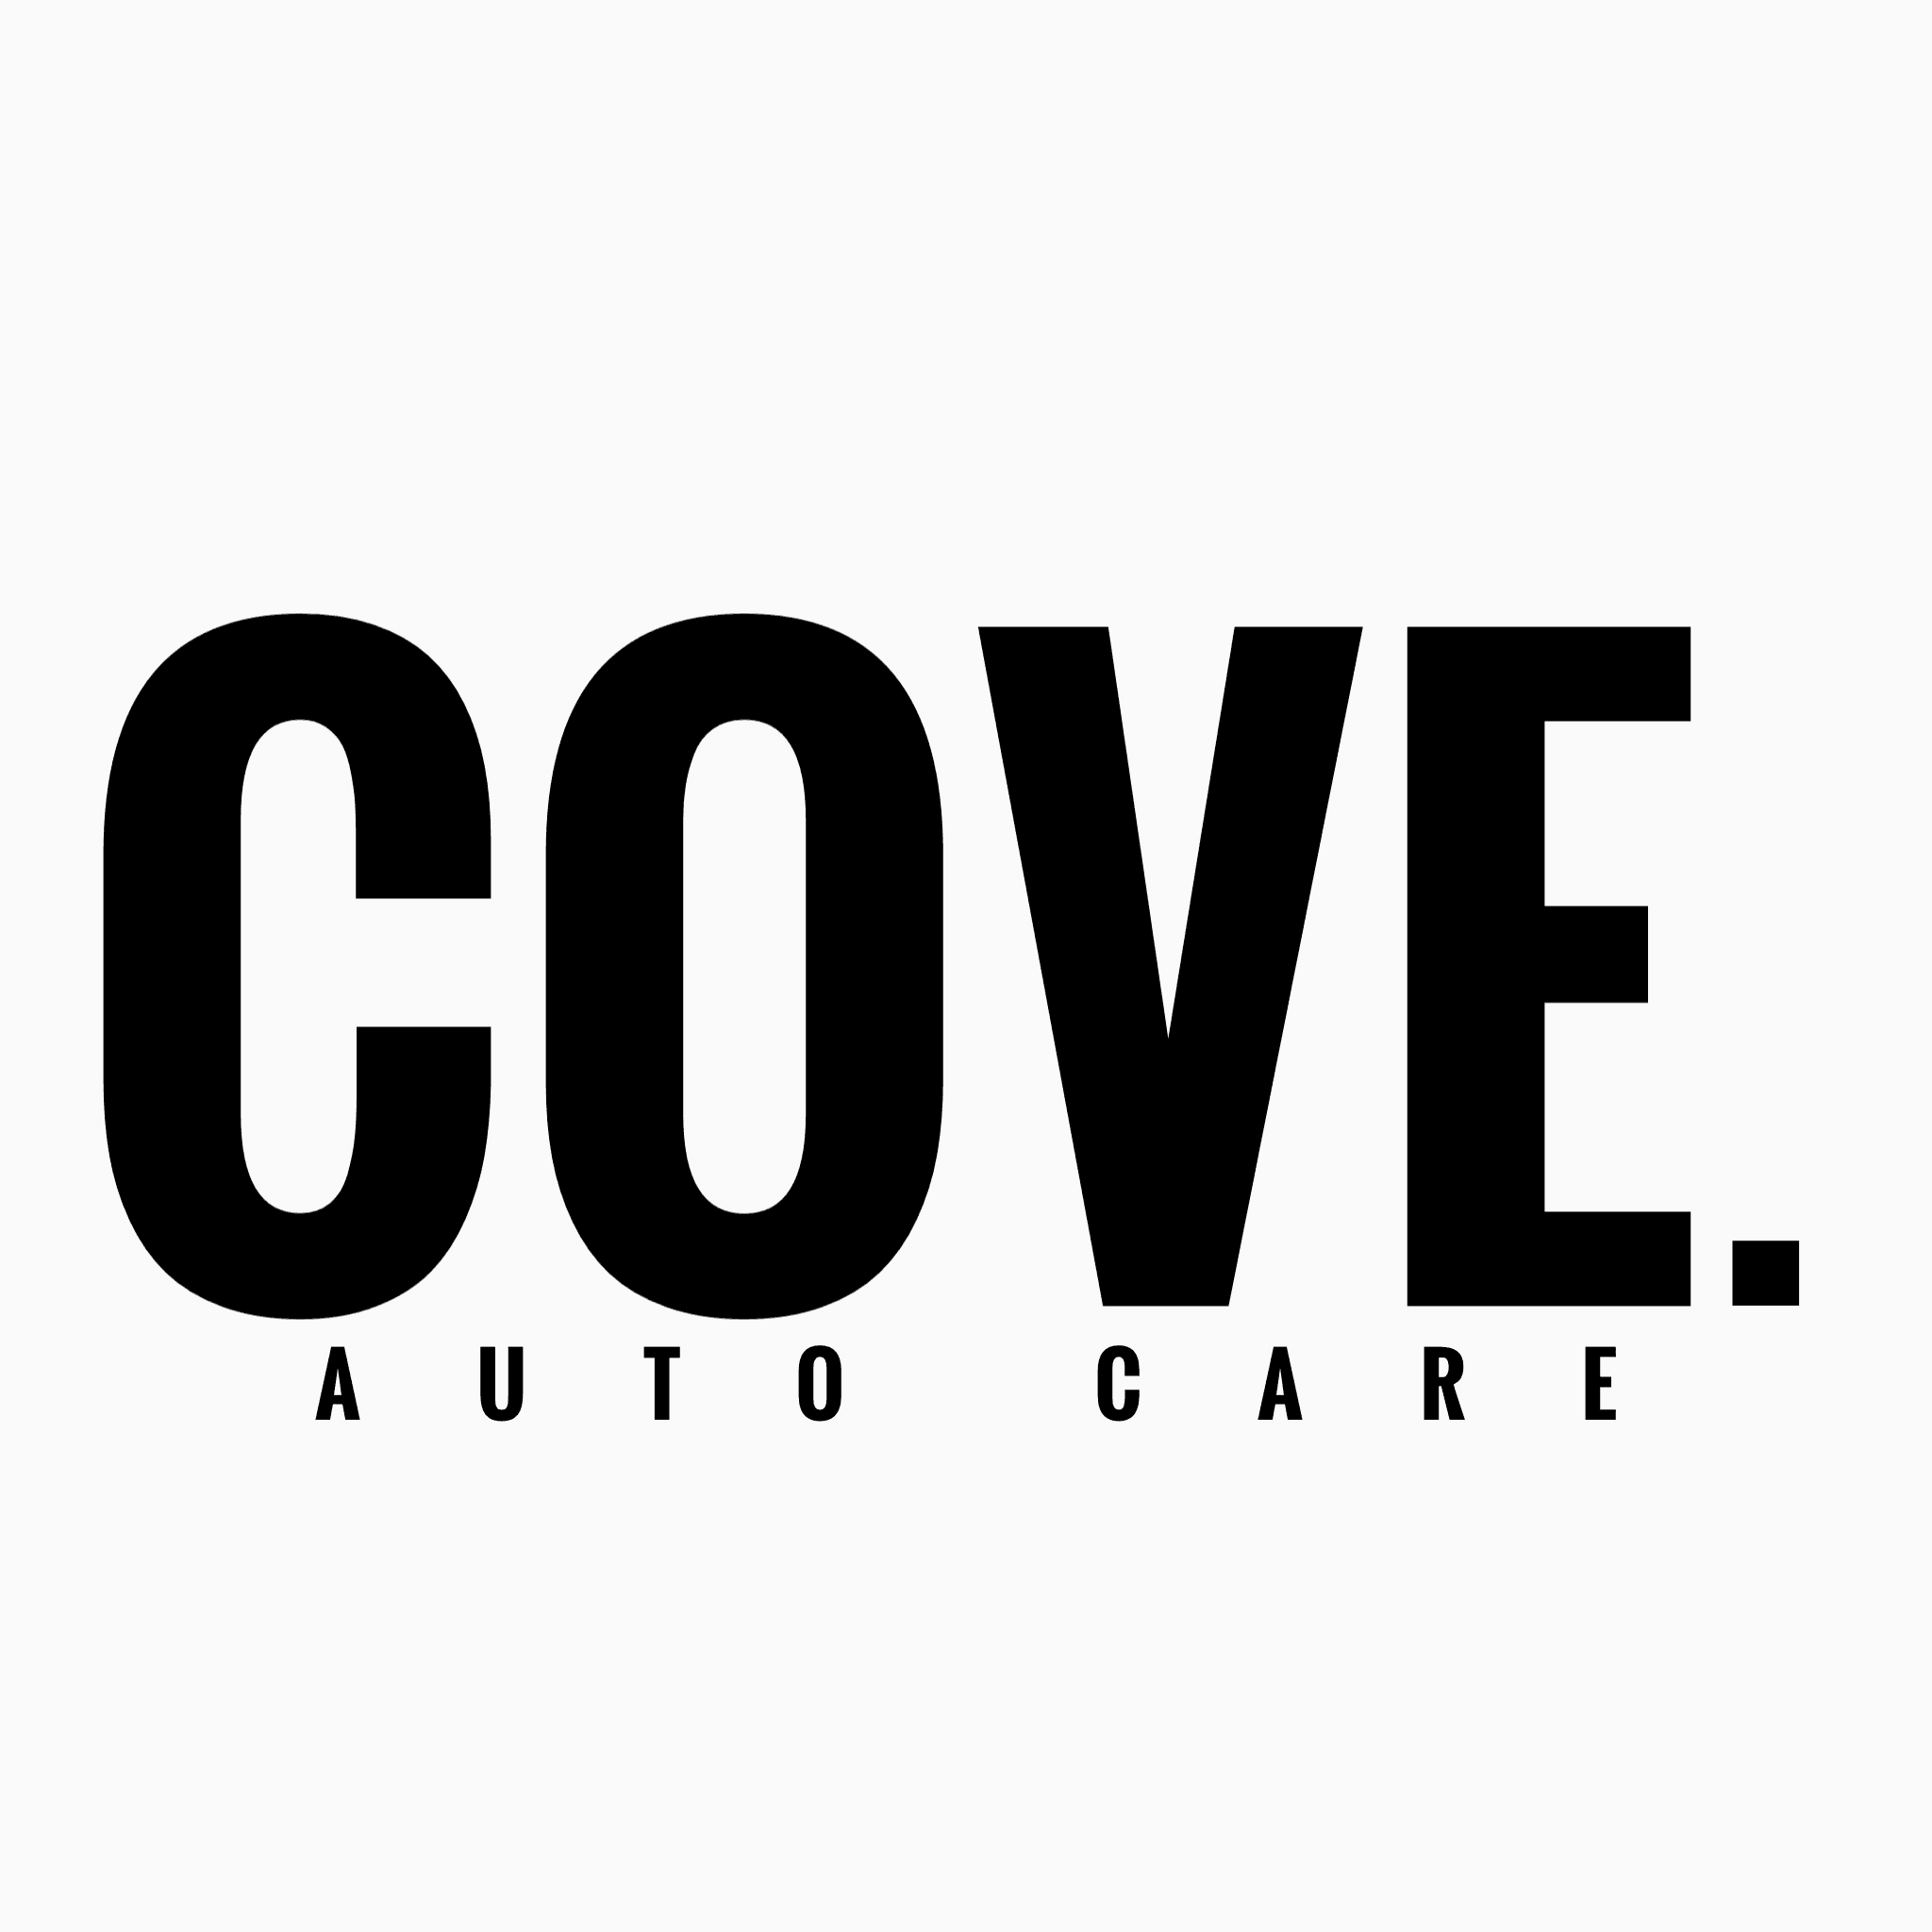 Coveautocare